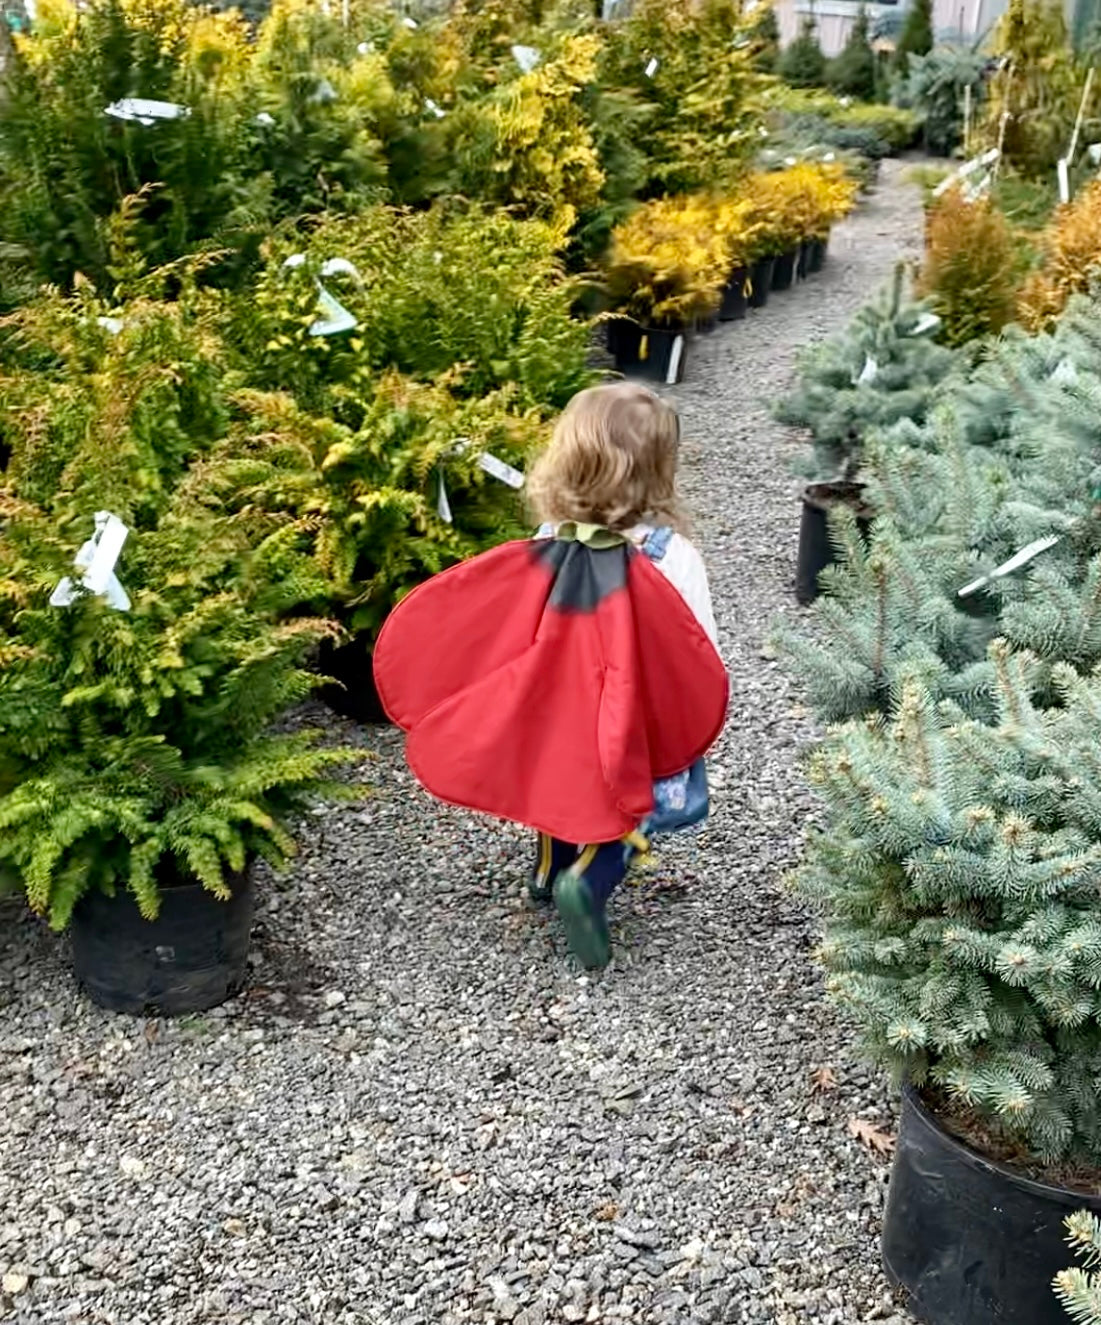 Girl wearing flower costume among plants.